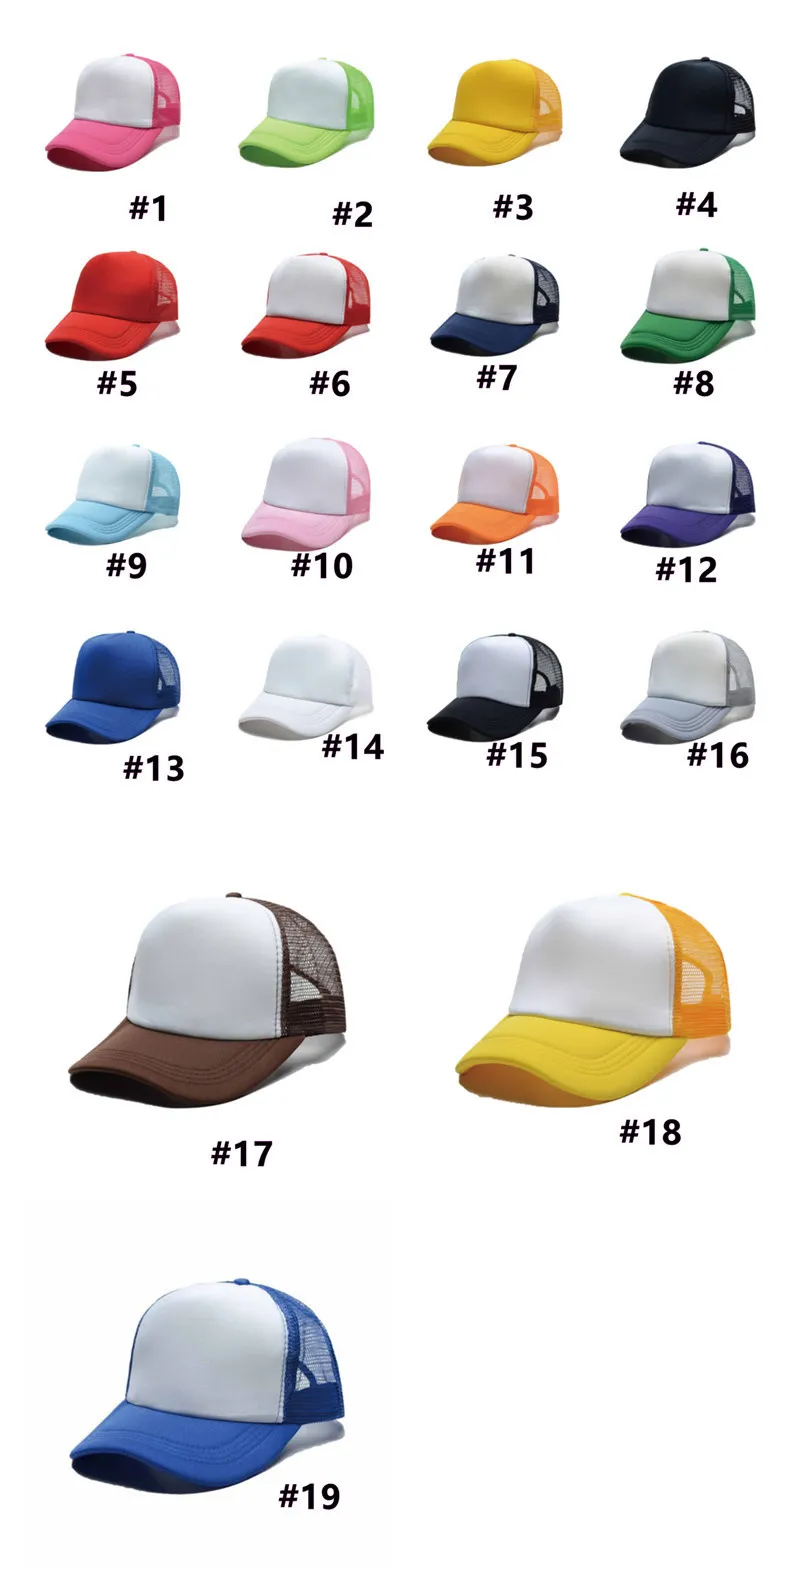 DIY termiczne przeniesienie ciepła wydruku sublimacja pusta kapelusz dorosły dzieci kolory blokowe czapki czapka z tytułu reklamy niestandardowe logo kolorowe 6180251